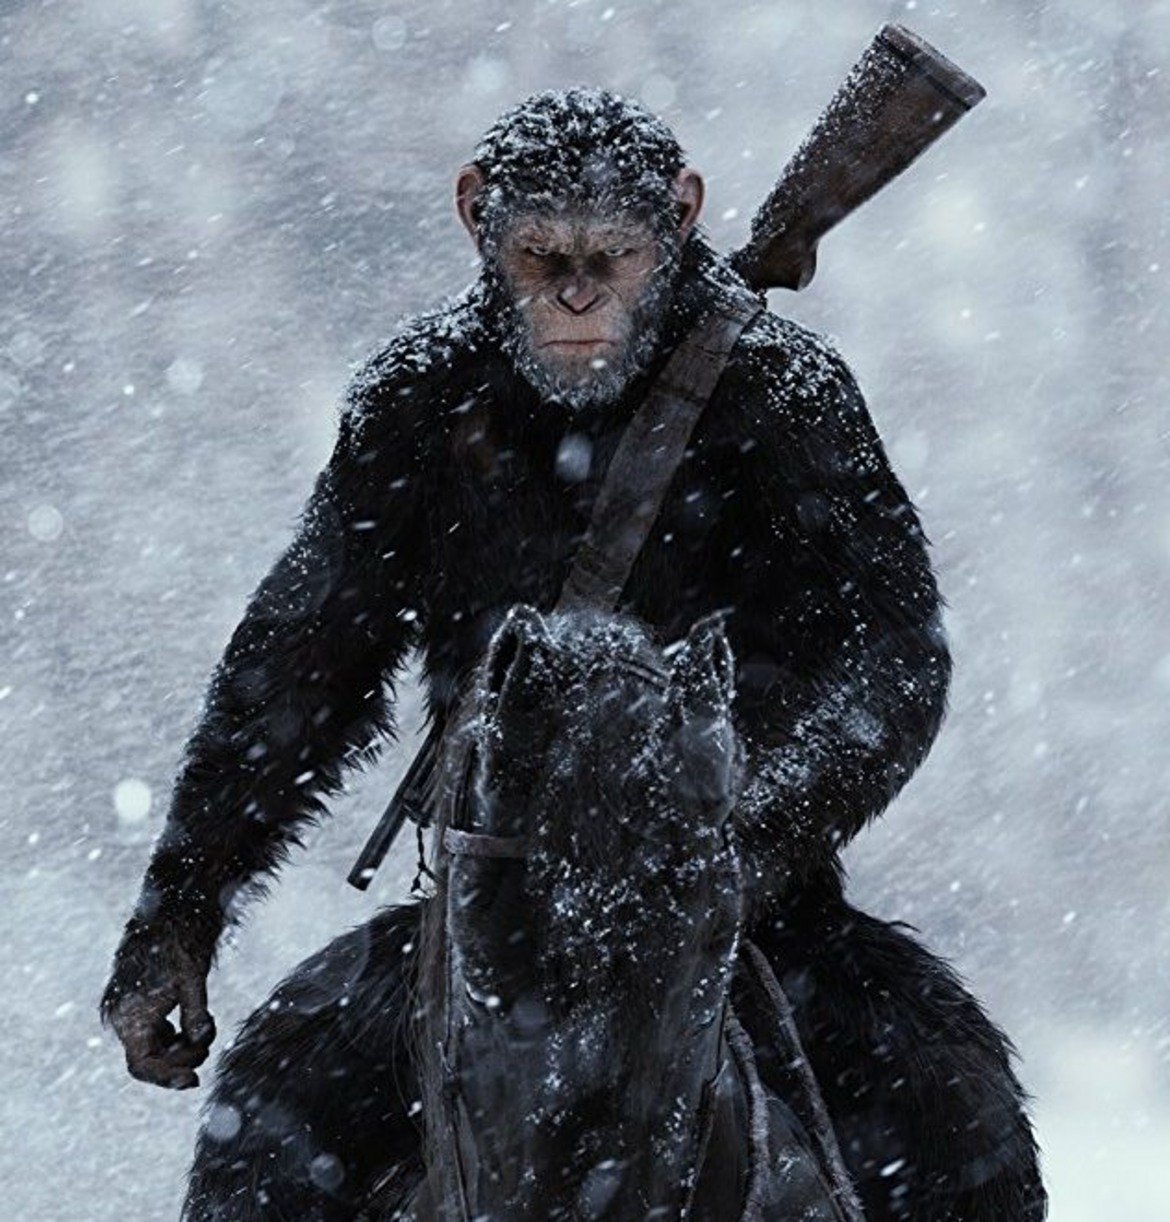 Цезар (новата трилогия "Планетата на маймуните", 2011-2017 г.)

Съркис влиза отново в кожата на маймуна за "Възходът на планетата на маймуните" (2011 г.). Той играе Цезар - шимпанзе, чиято интелигентност е увеличена след тестове на лекарство, чиято цел е да лекува болестта на Алцхаймер. Цезар се превръща в лидер на освободителното движение на маймуните, които се обръщат срещу човечеството, а Съркис има още два филма време да разработи персонажа. Специално за тази роля се прилага и нов метод за още по-прецизно улавяне на движенията на мускулите около очите, тъй като Цезар и неговите сподвижници комуникират най-вече с езика на знаците и изразителните очи са още по-важни, за да могат Съркис и неговите колеги да предадат емоциите на маймуните.